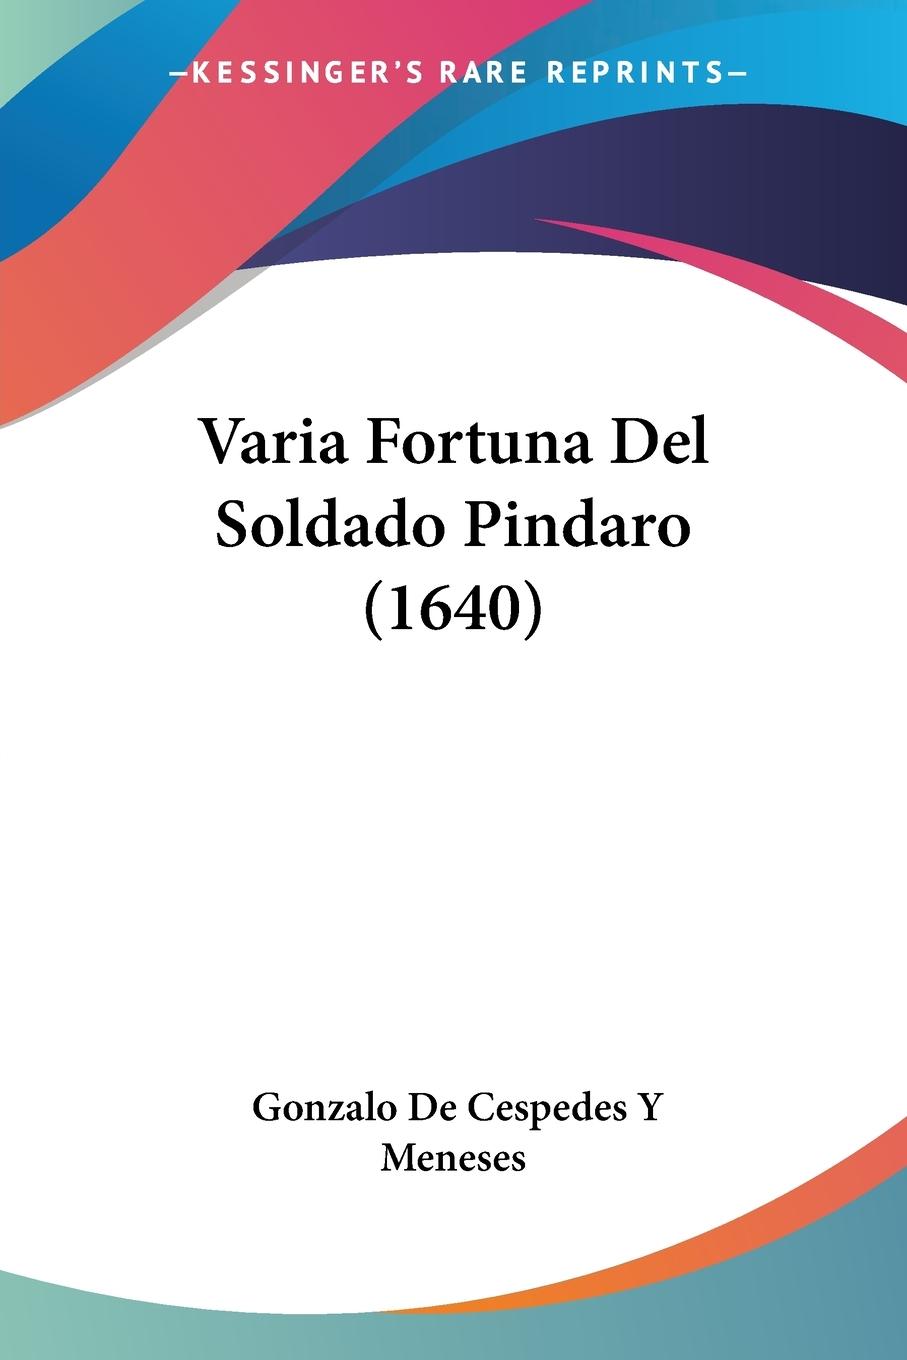 Varia Fortuna Del Soldado Pindaro (1640) - Meneses, Gonzalo de Cespedes Y